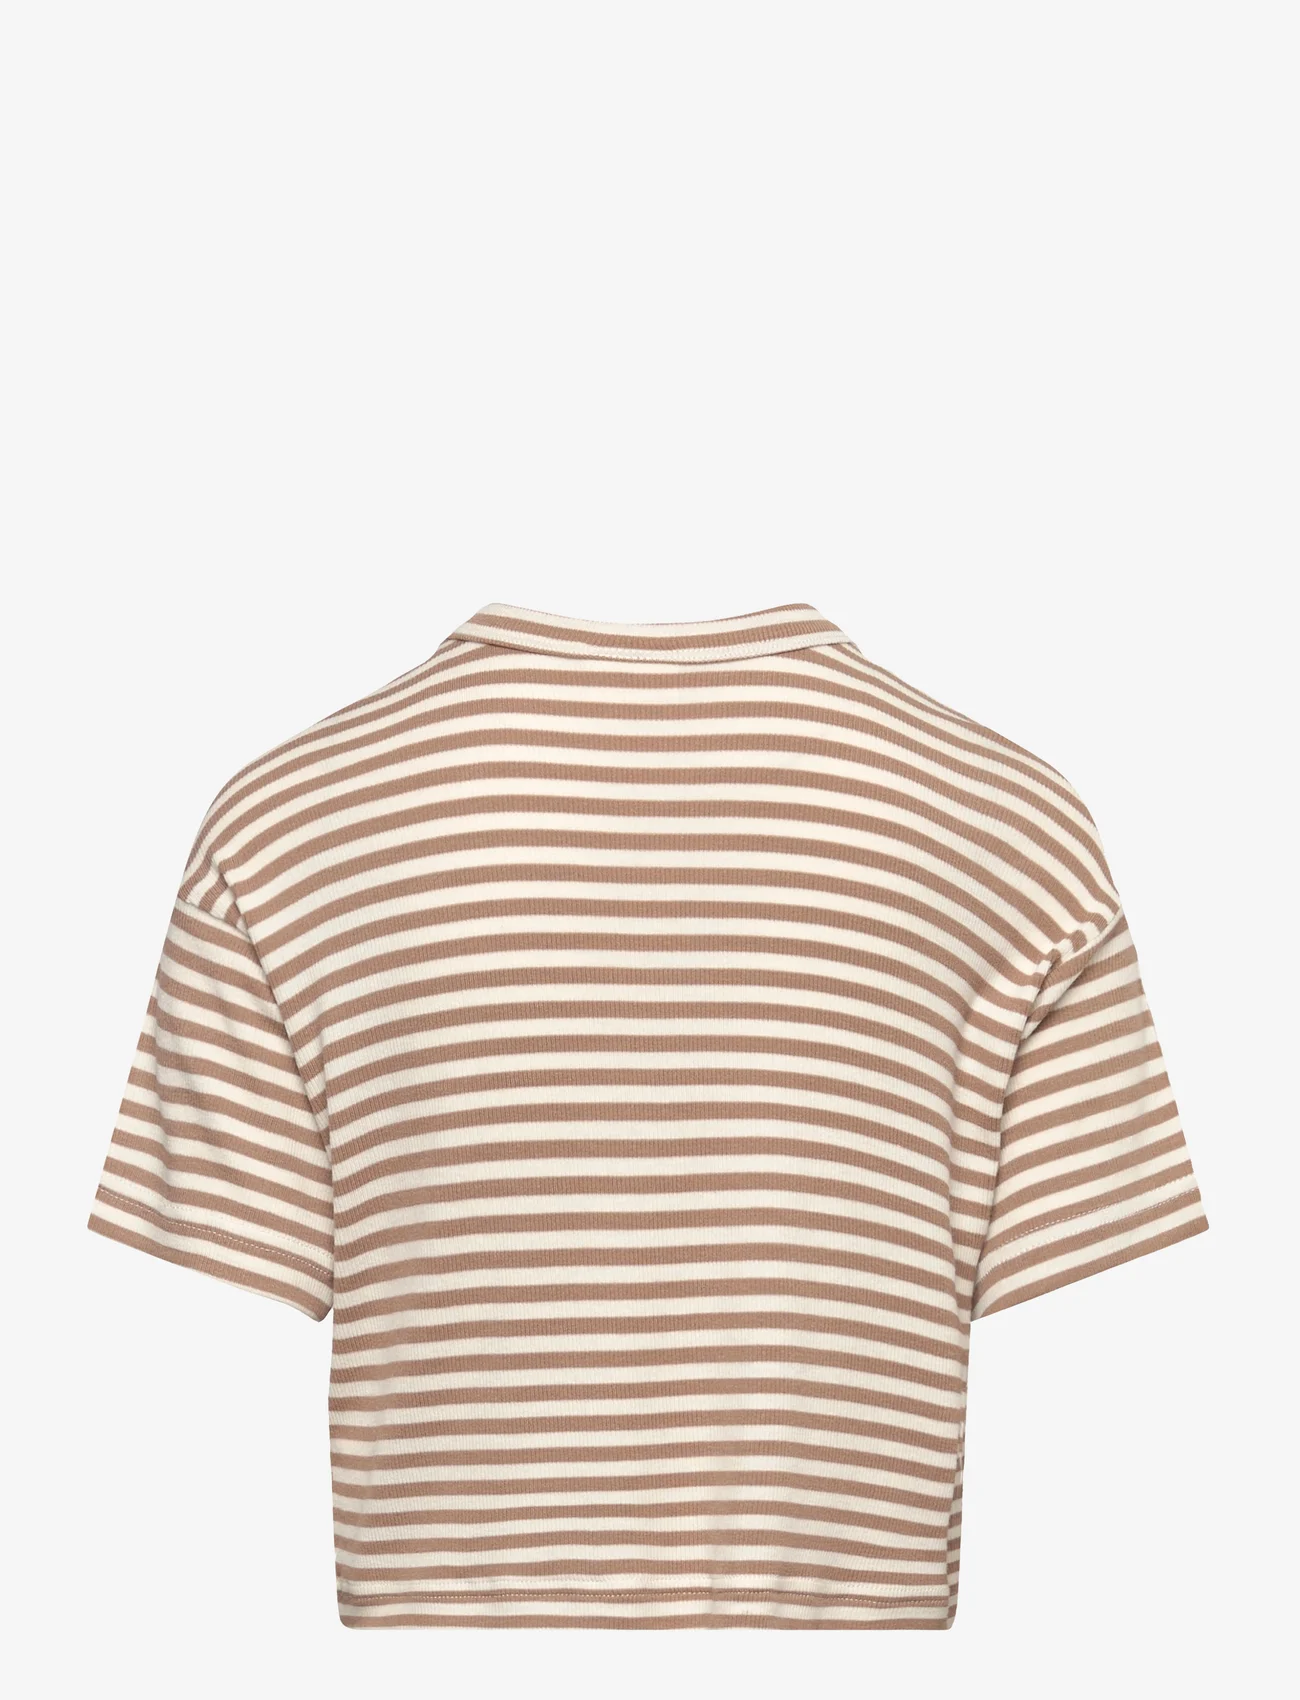 Sofie Schnoor Young - T-shirt - kurzärmelige - beige striped - 1